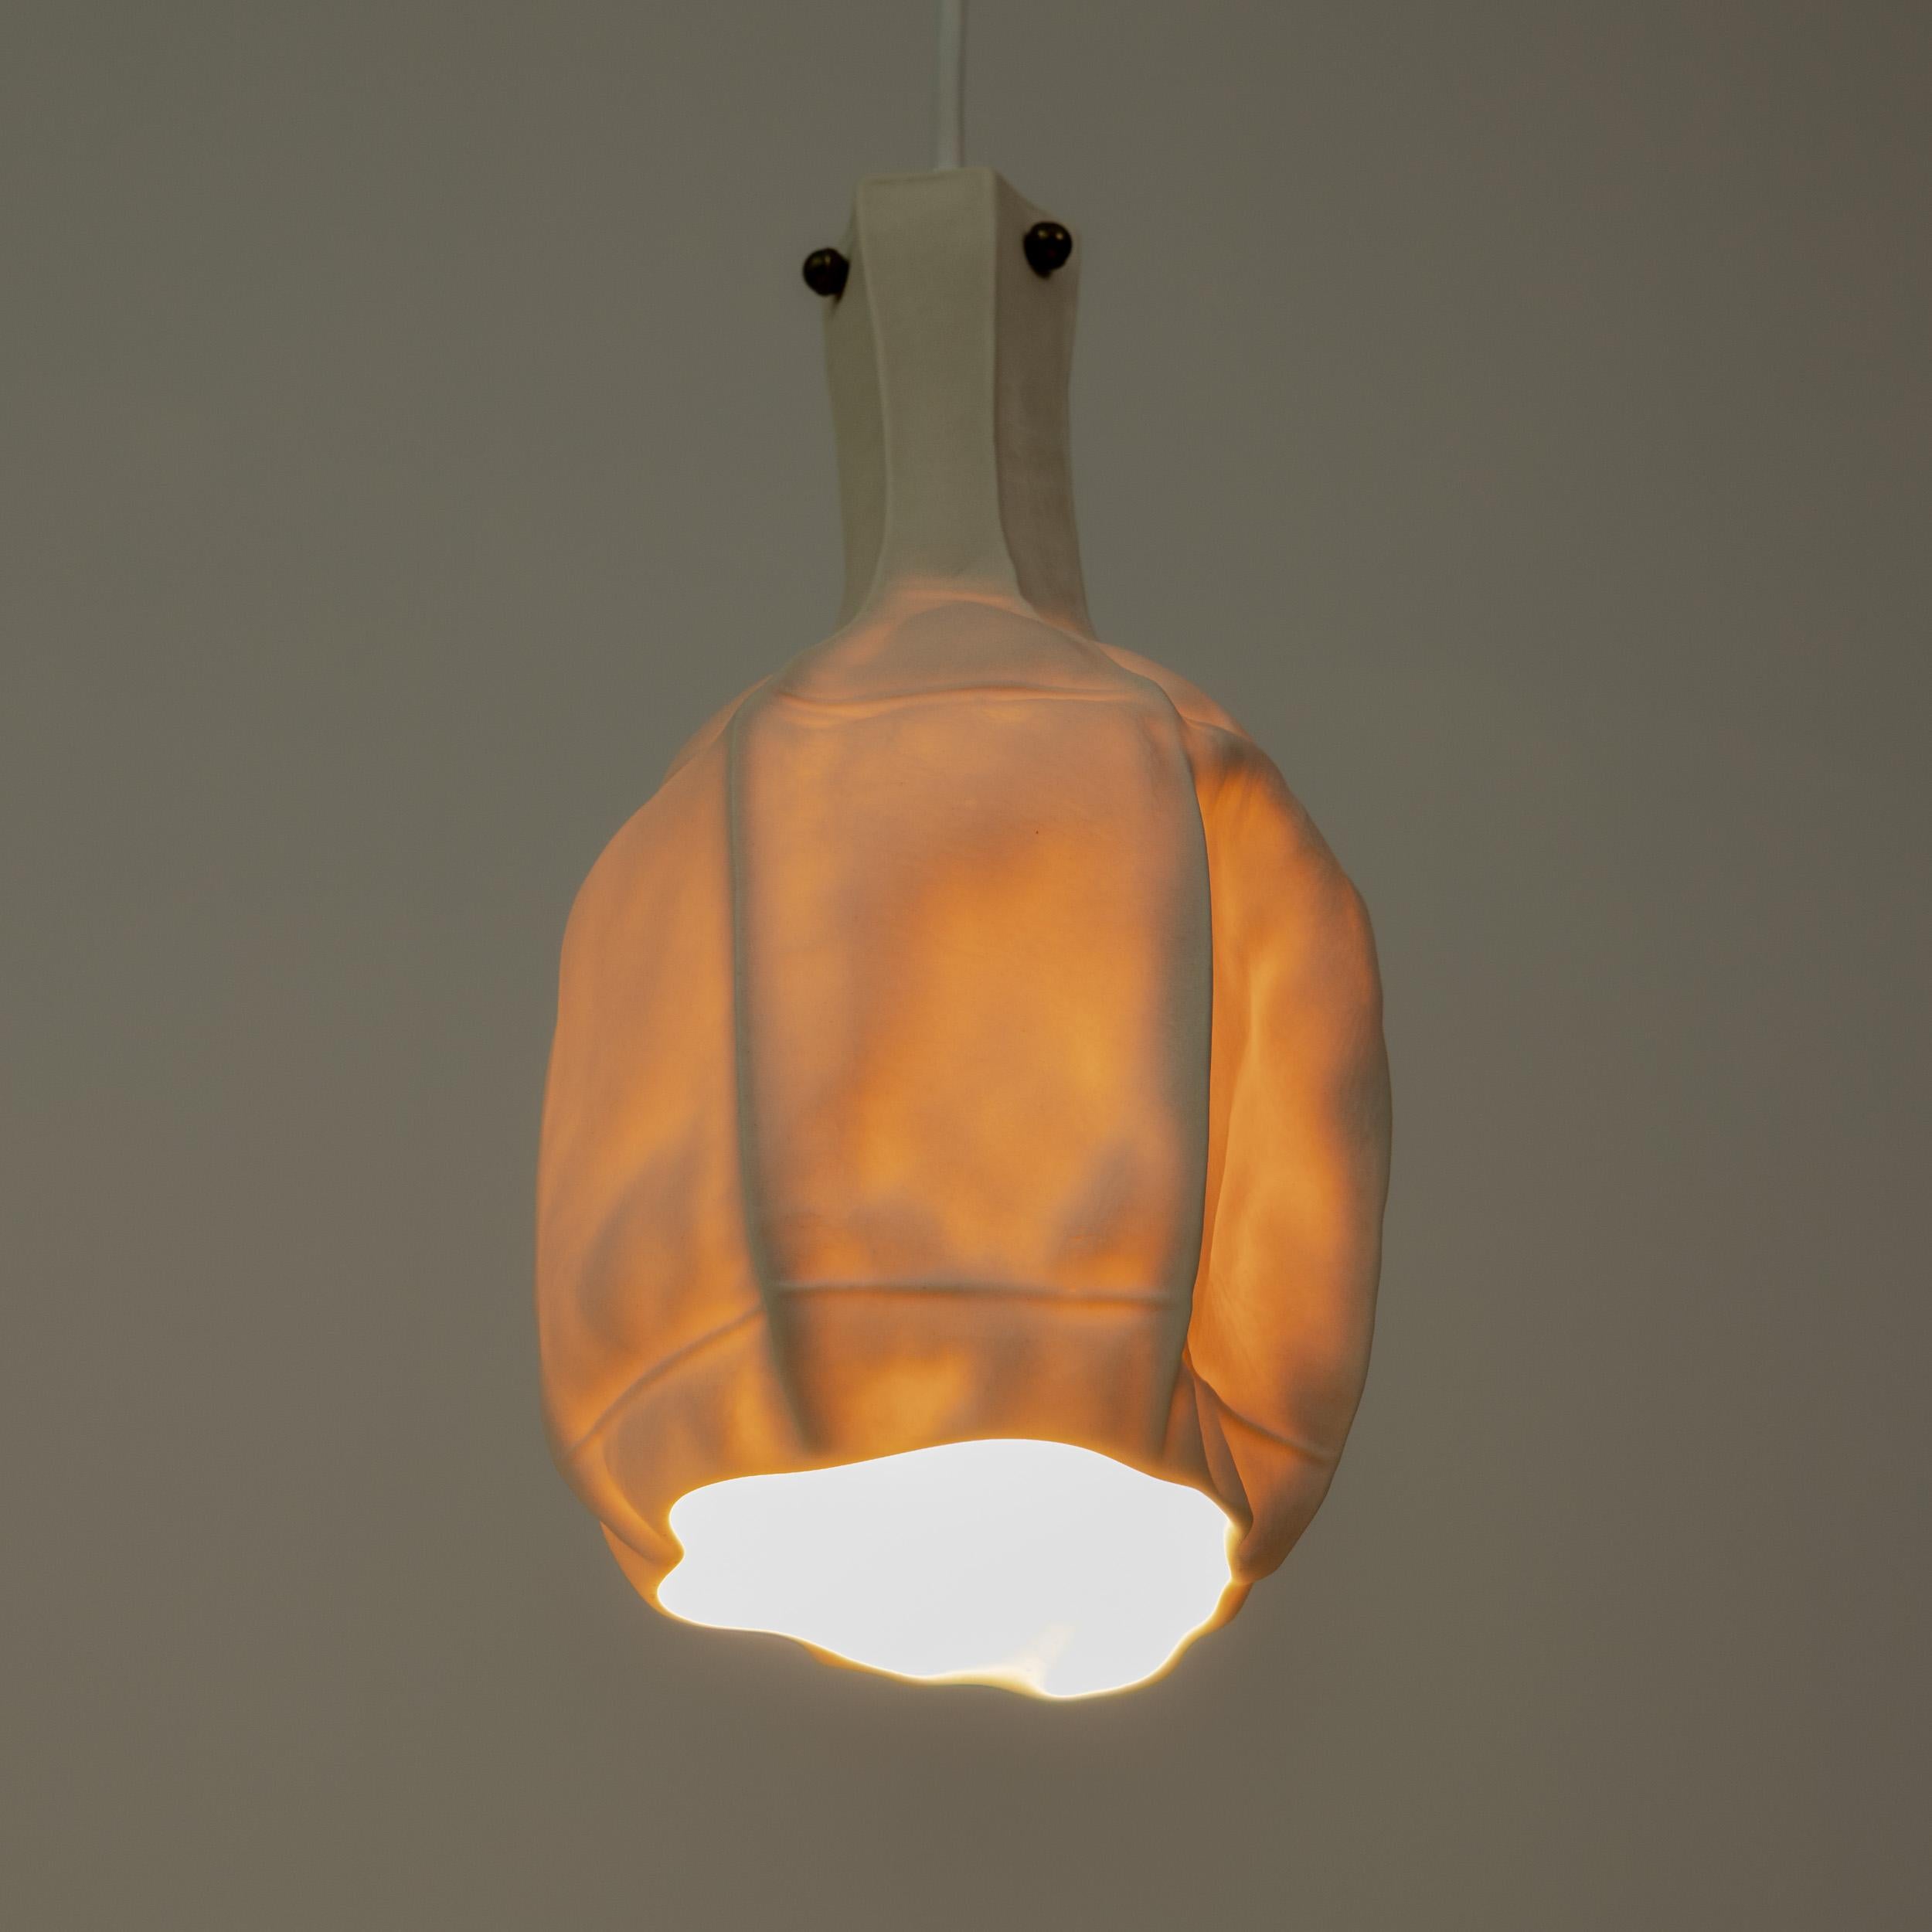 Américain SAMPLE, Lampe à suspension en porcelaine, Série Kawa, céramique blanche translucide